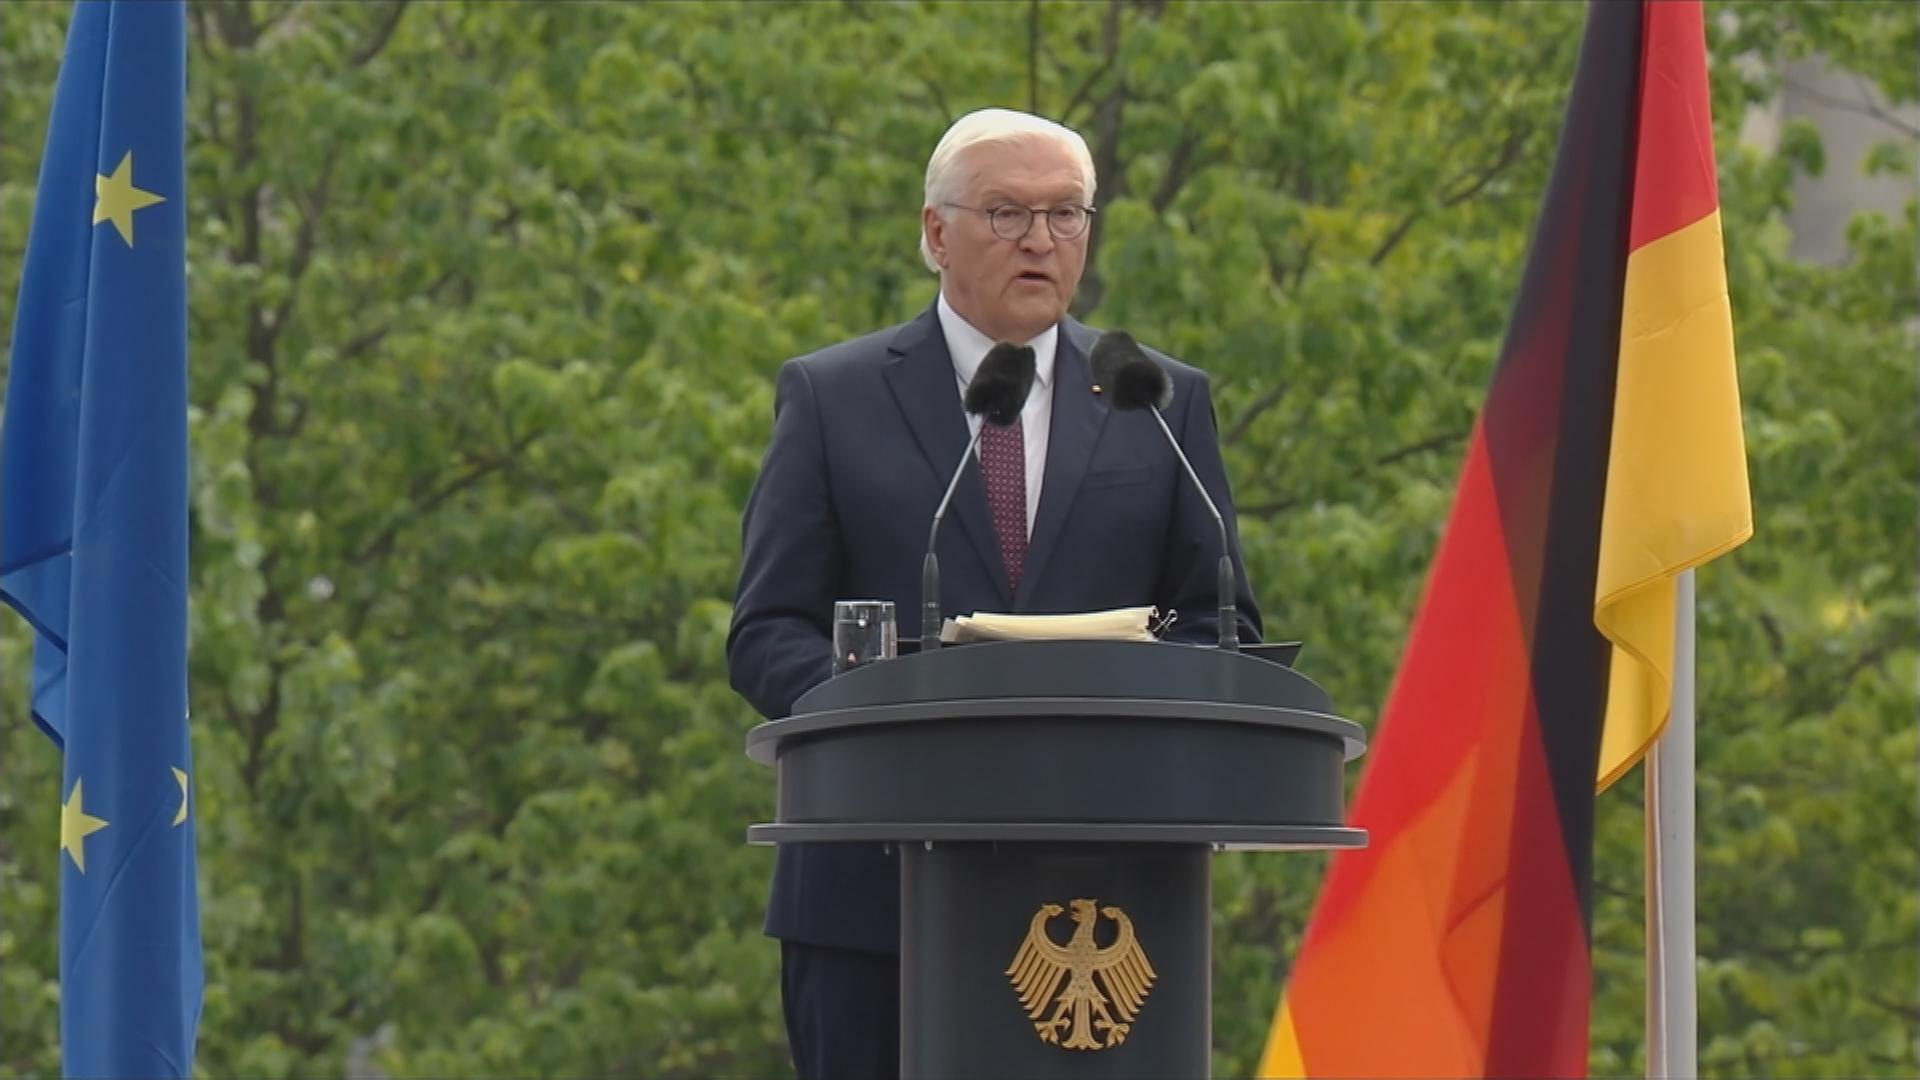 Bundespräsident Steinmeier hält Rede bei Staatsakt